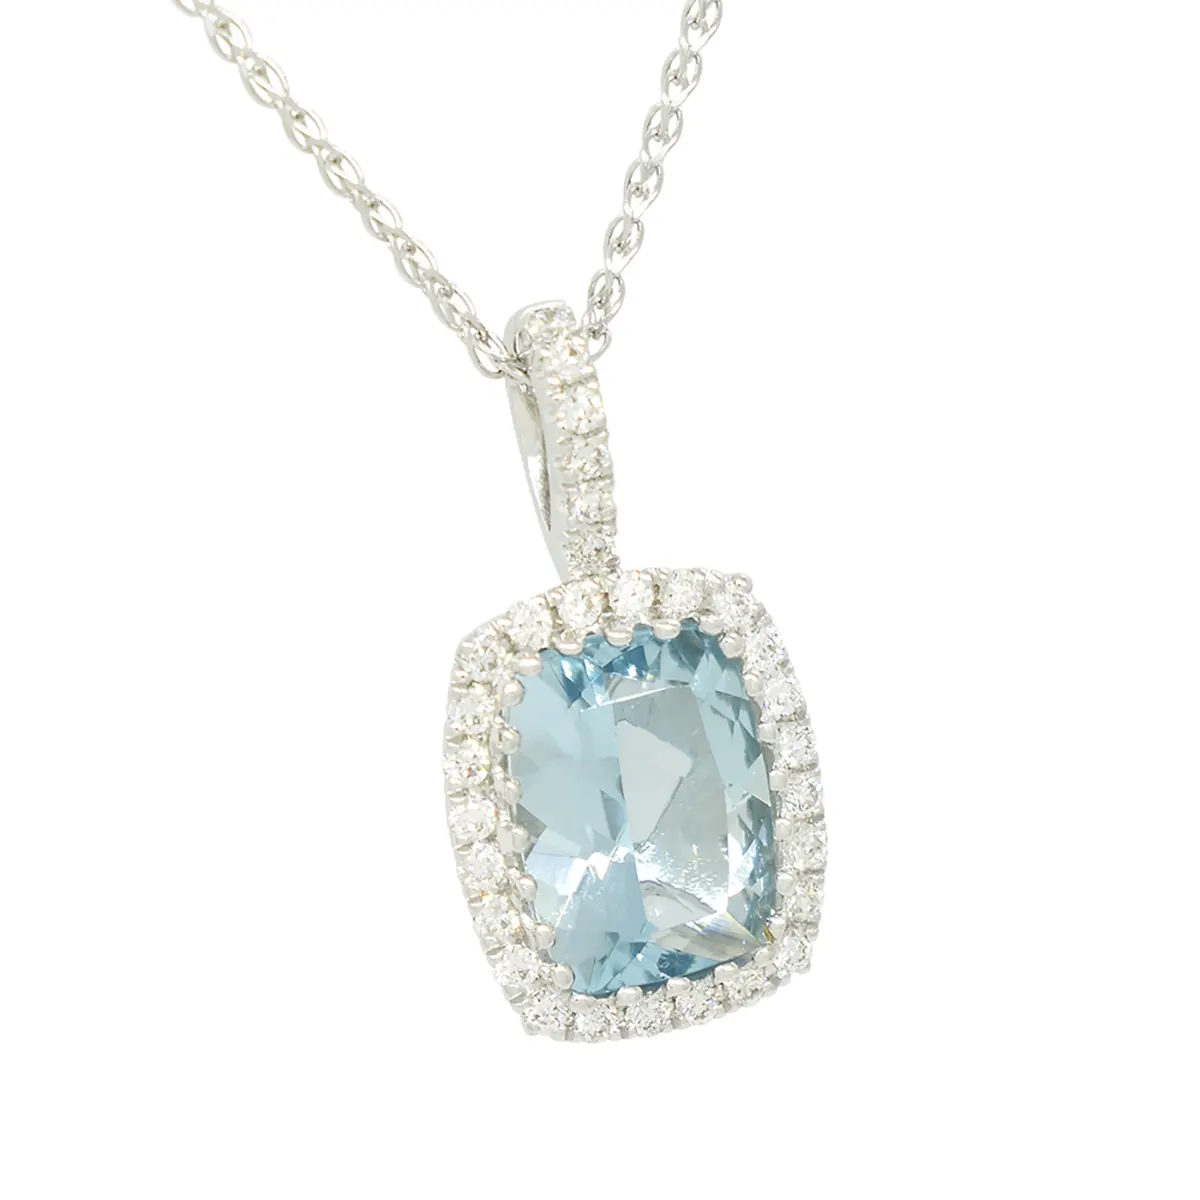 cushion_cut_aquamarine_necklace_diamond_halo_white_gold.webp